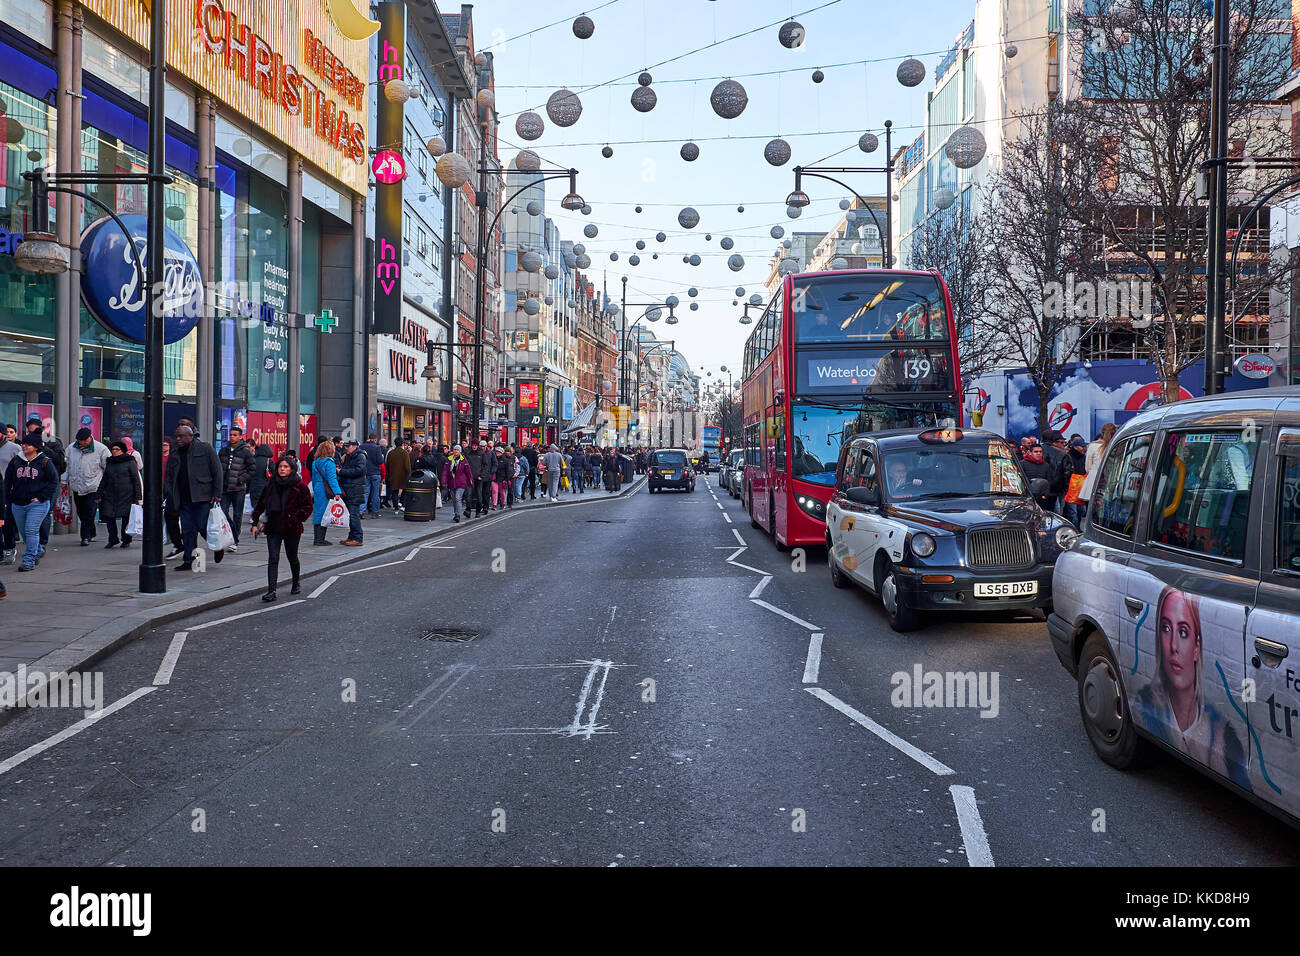 London city - dicembre 24, 2016: double decker bus la guida nel mezzo di Oxford street con un sacco di decorazione di Natale Foto Stock